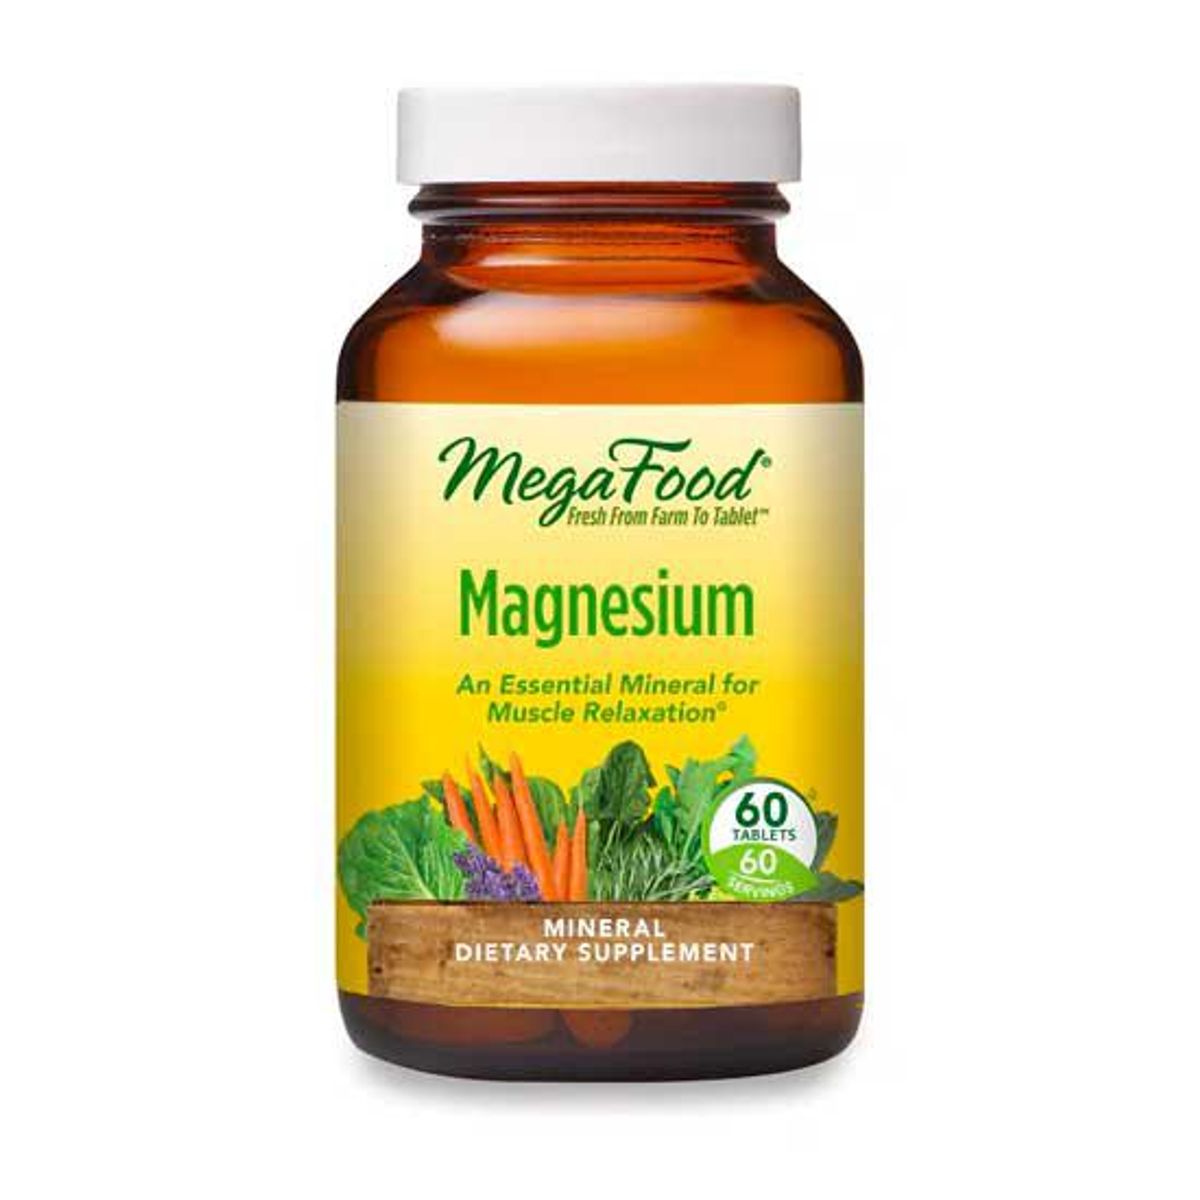 megafood magnesium